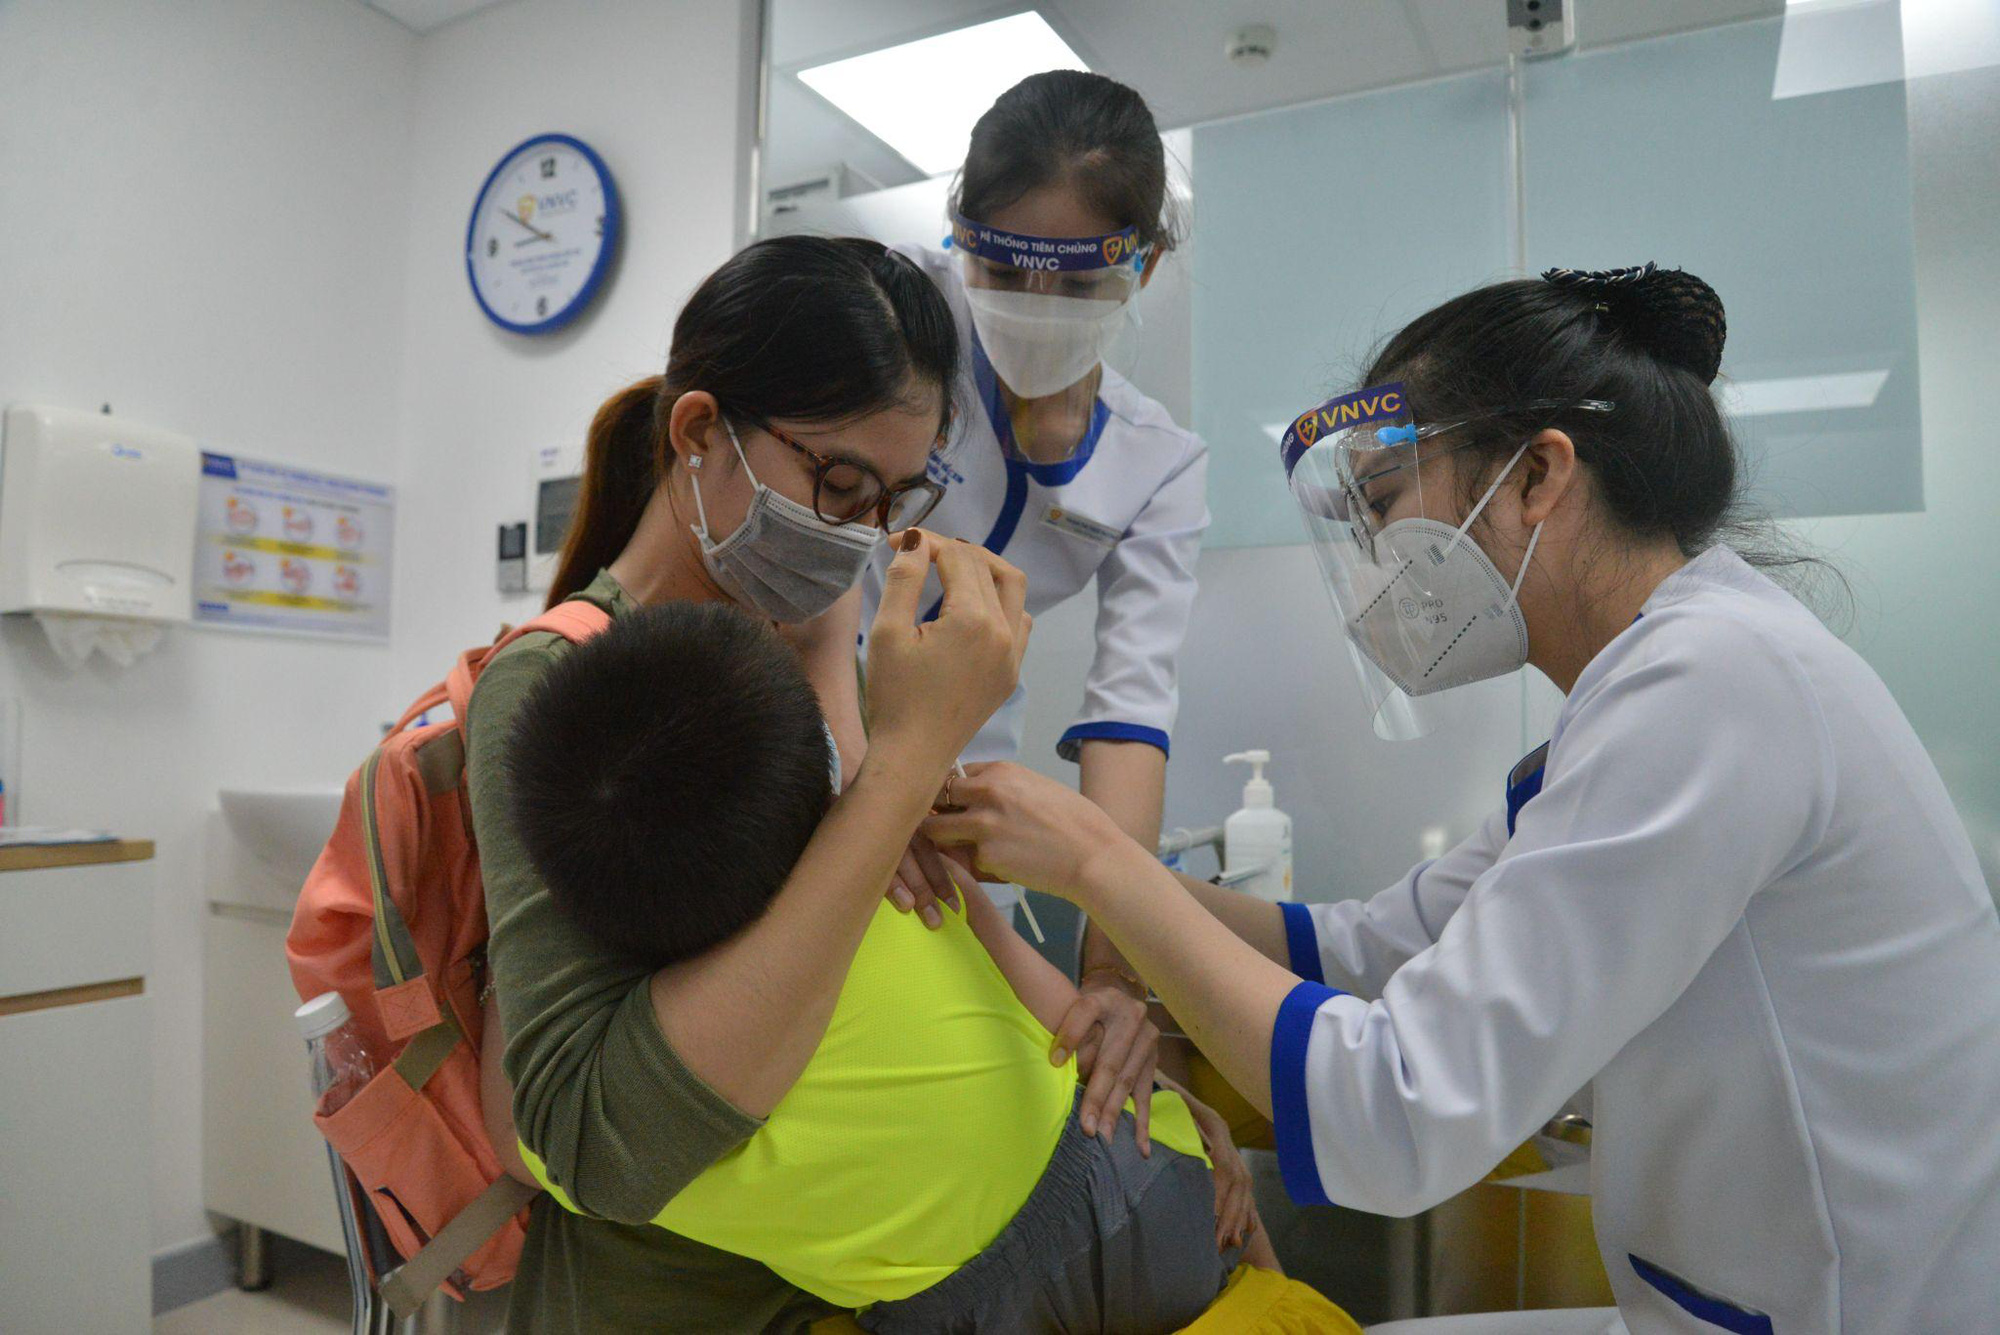 VNVC khai trương Trung tâm tiêm chủng đầu tiên tại Thái Bình - Ảnh 1.